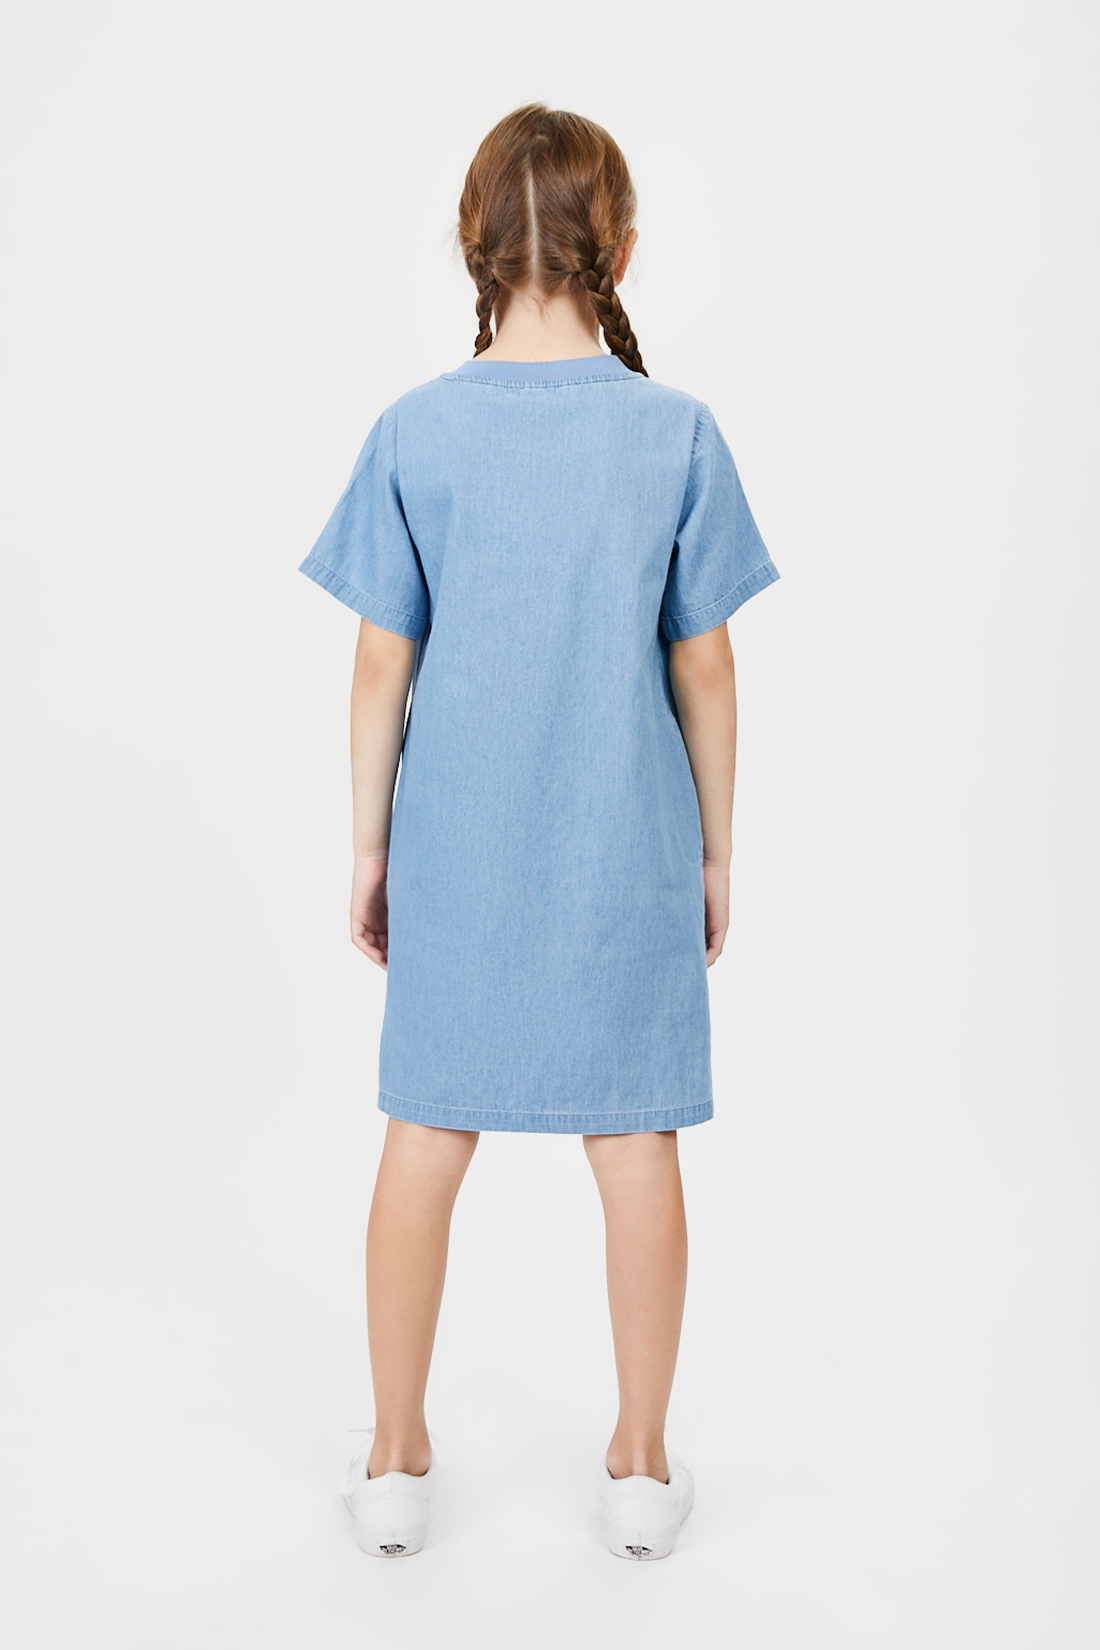 Платье (арт. baon BK451002), размер 146, цвет blue denim#голубой Платье (арт. baon BK451002) - фото 2